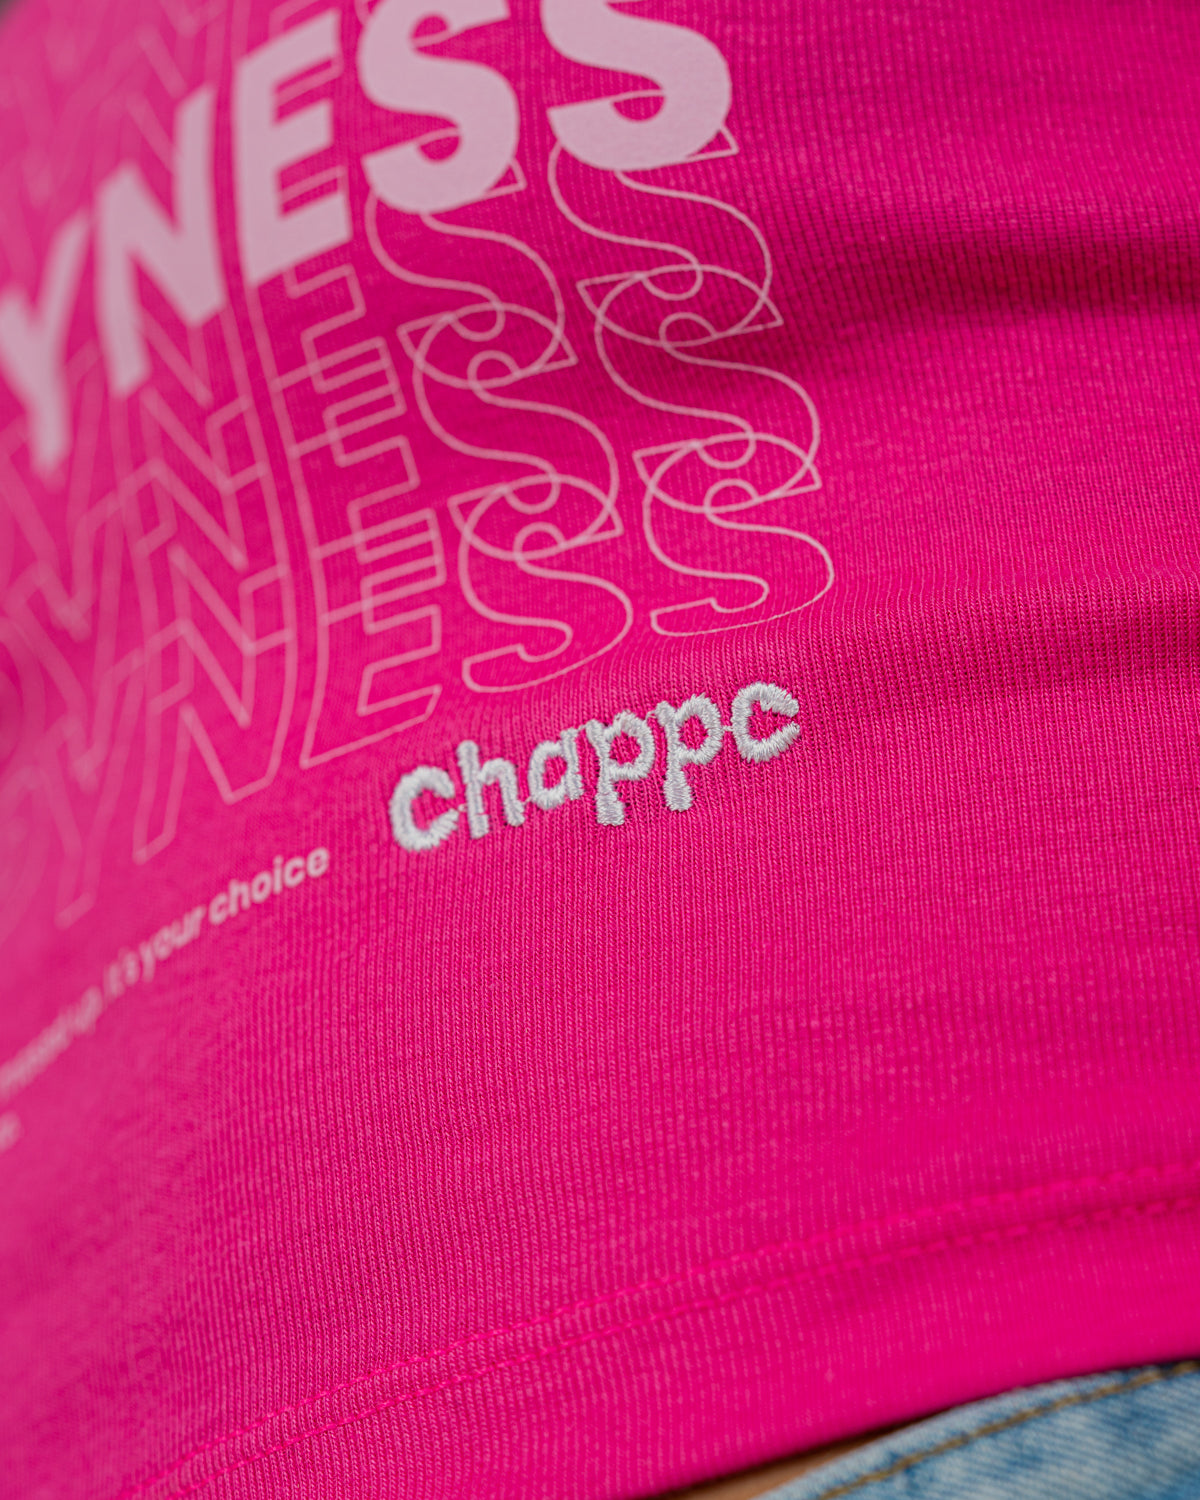 Happyness Chappe Women's Crop Top